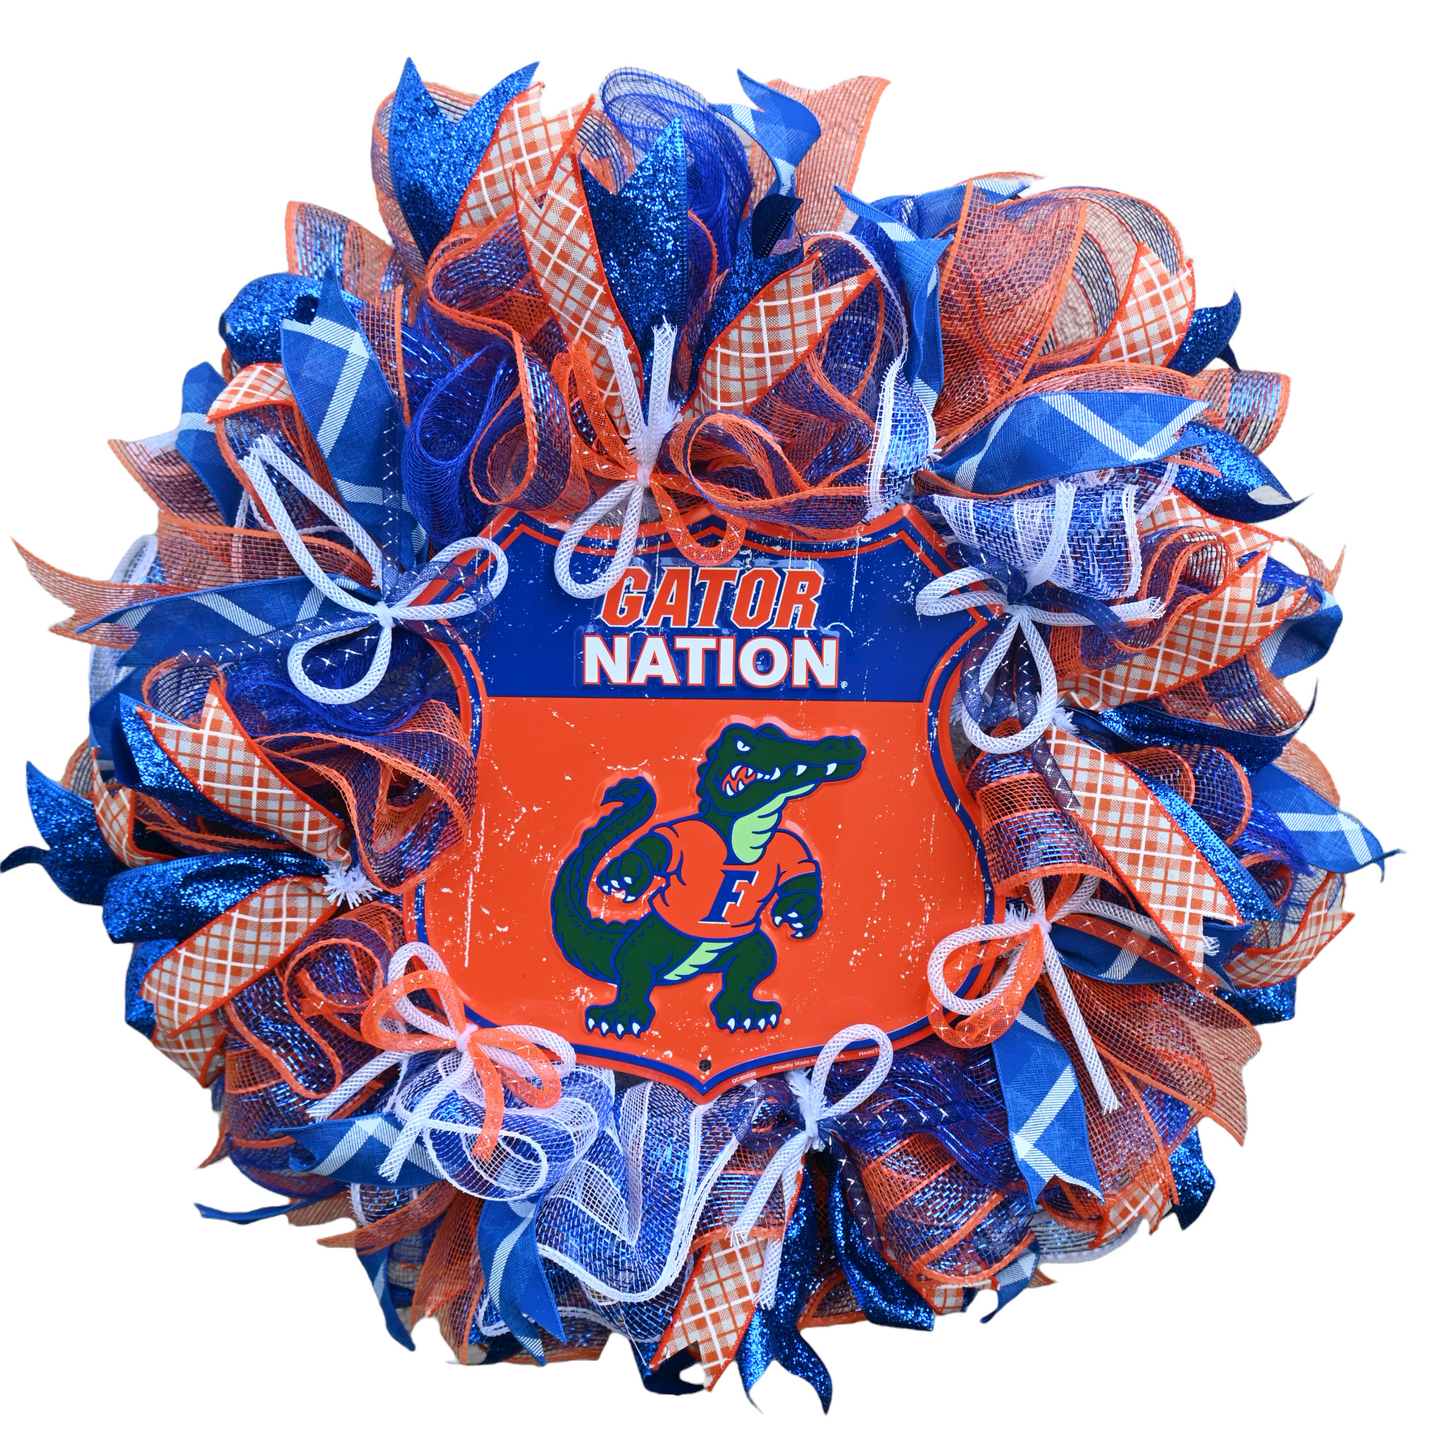 24" Gators Wreath - Florida Gators Wreath - Orange Blue Wreath